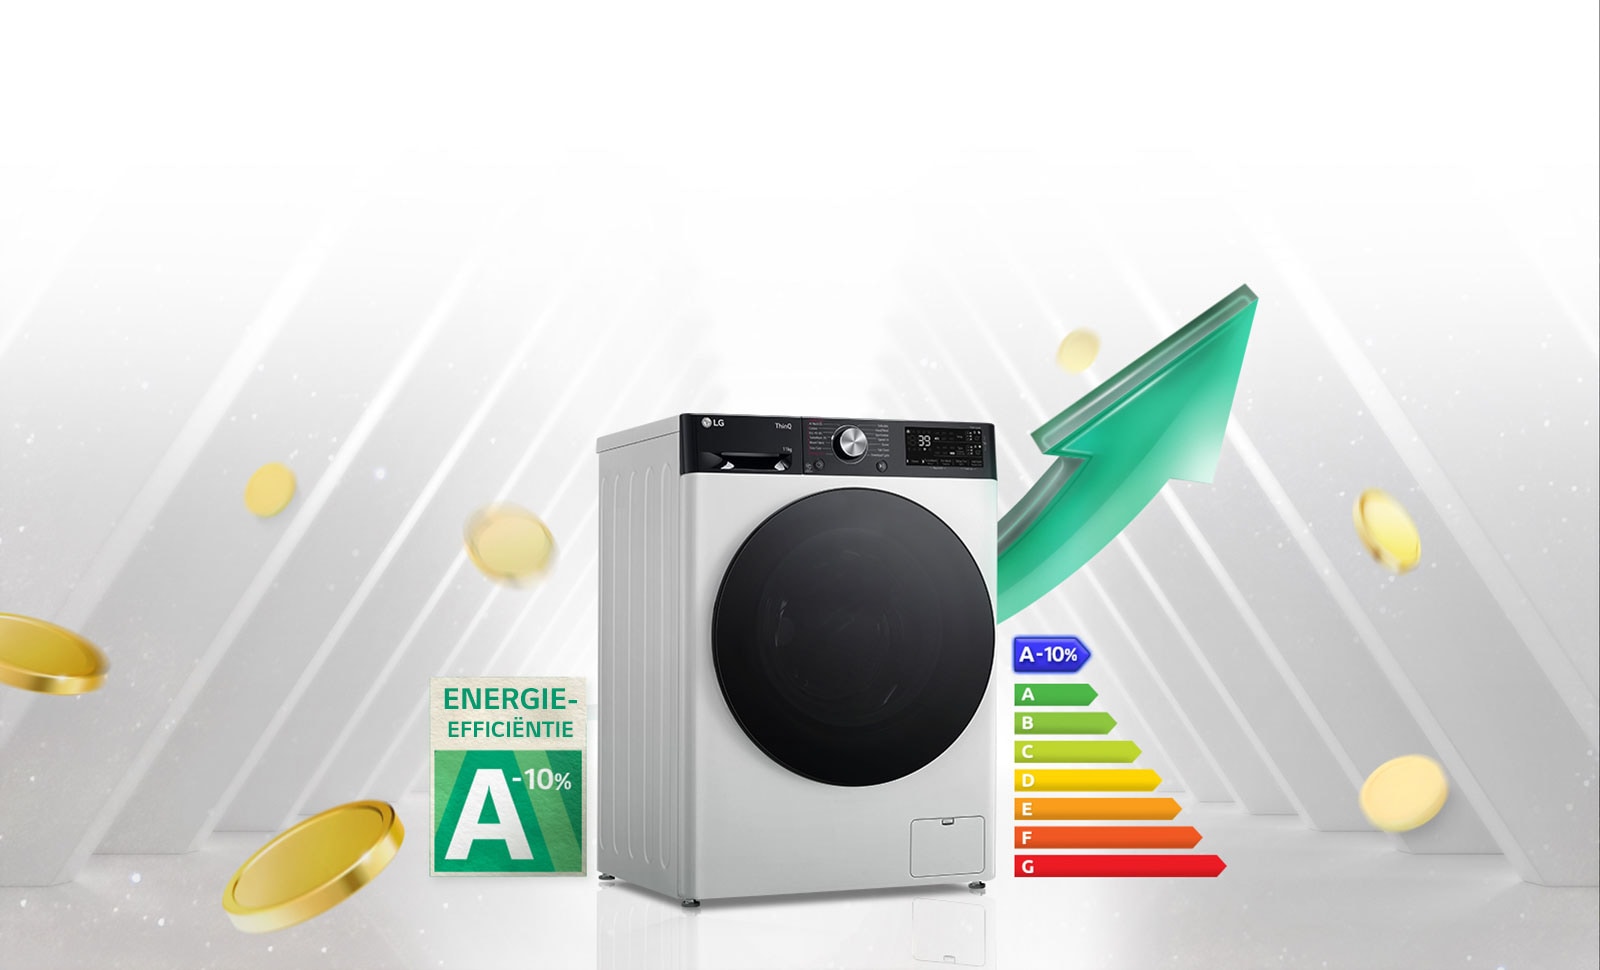 Het label A-10% voor hoge energie-efficiëntie en de grafiek van de energie-efficiëntie worden naast de wasmachine getoond. Achter de wasmachine wordt de groene pijl in opwaartse richting getoond.